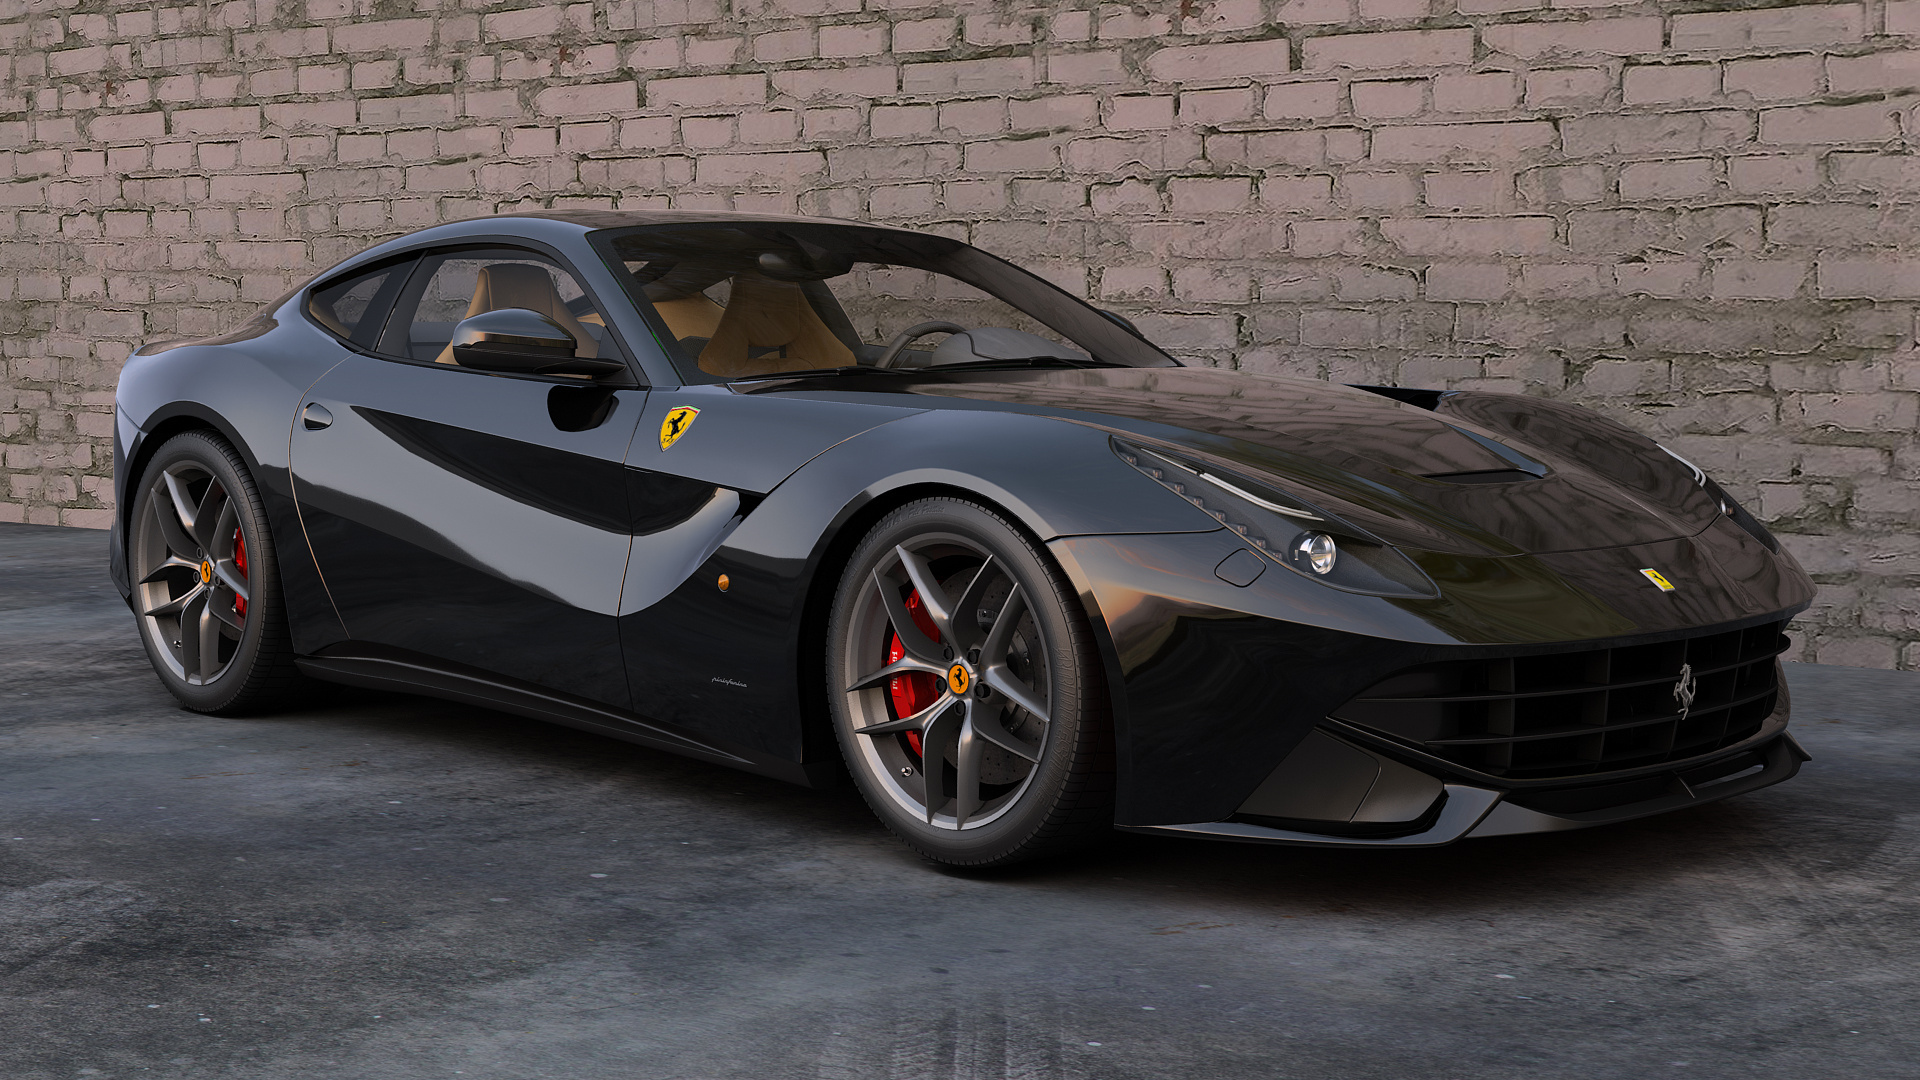 Descargar fondos de escritorio de Ferrari F12 Berlinetta HD